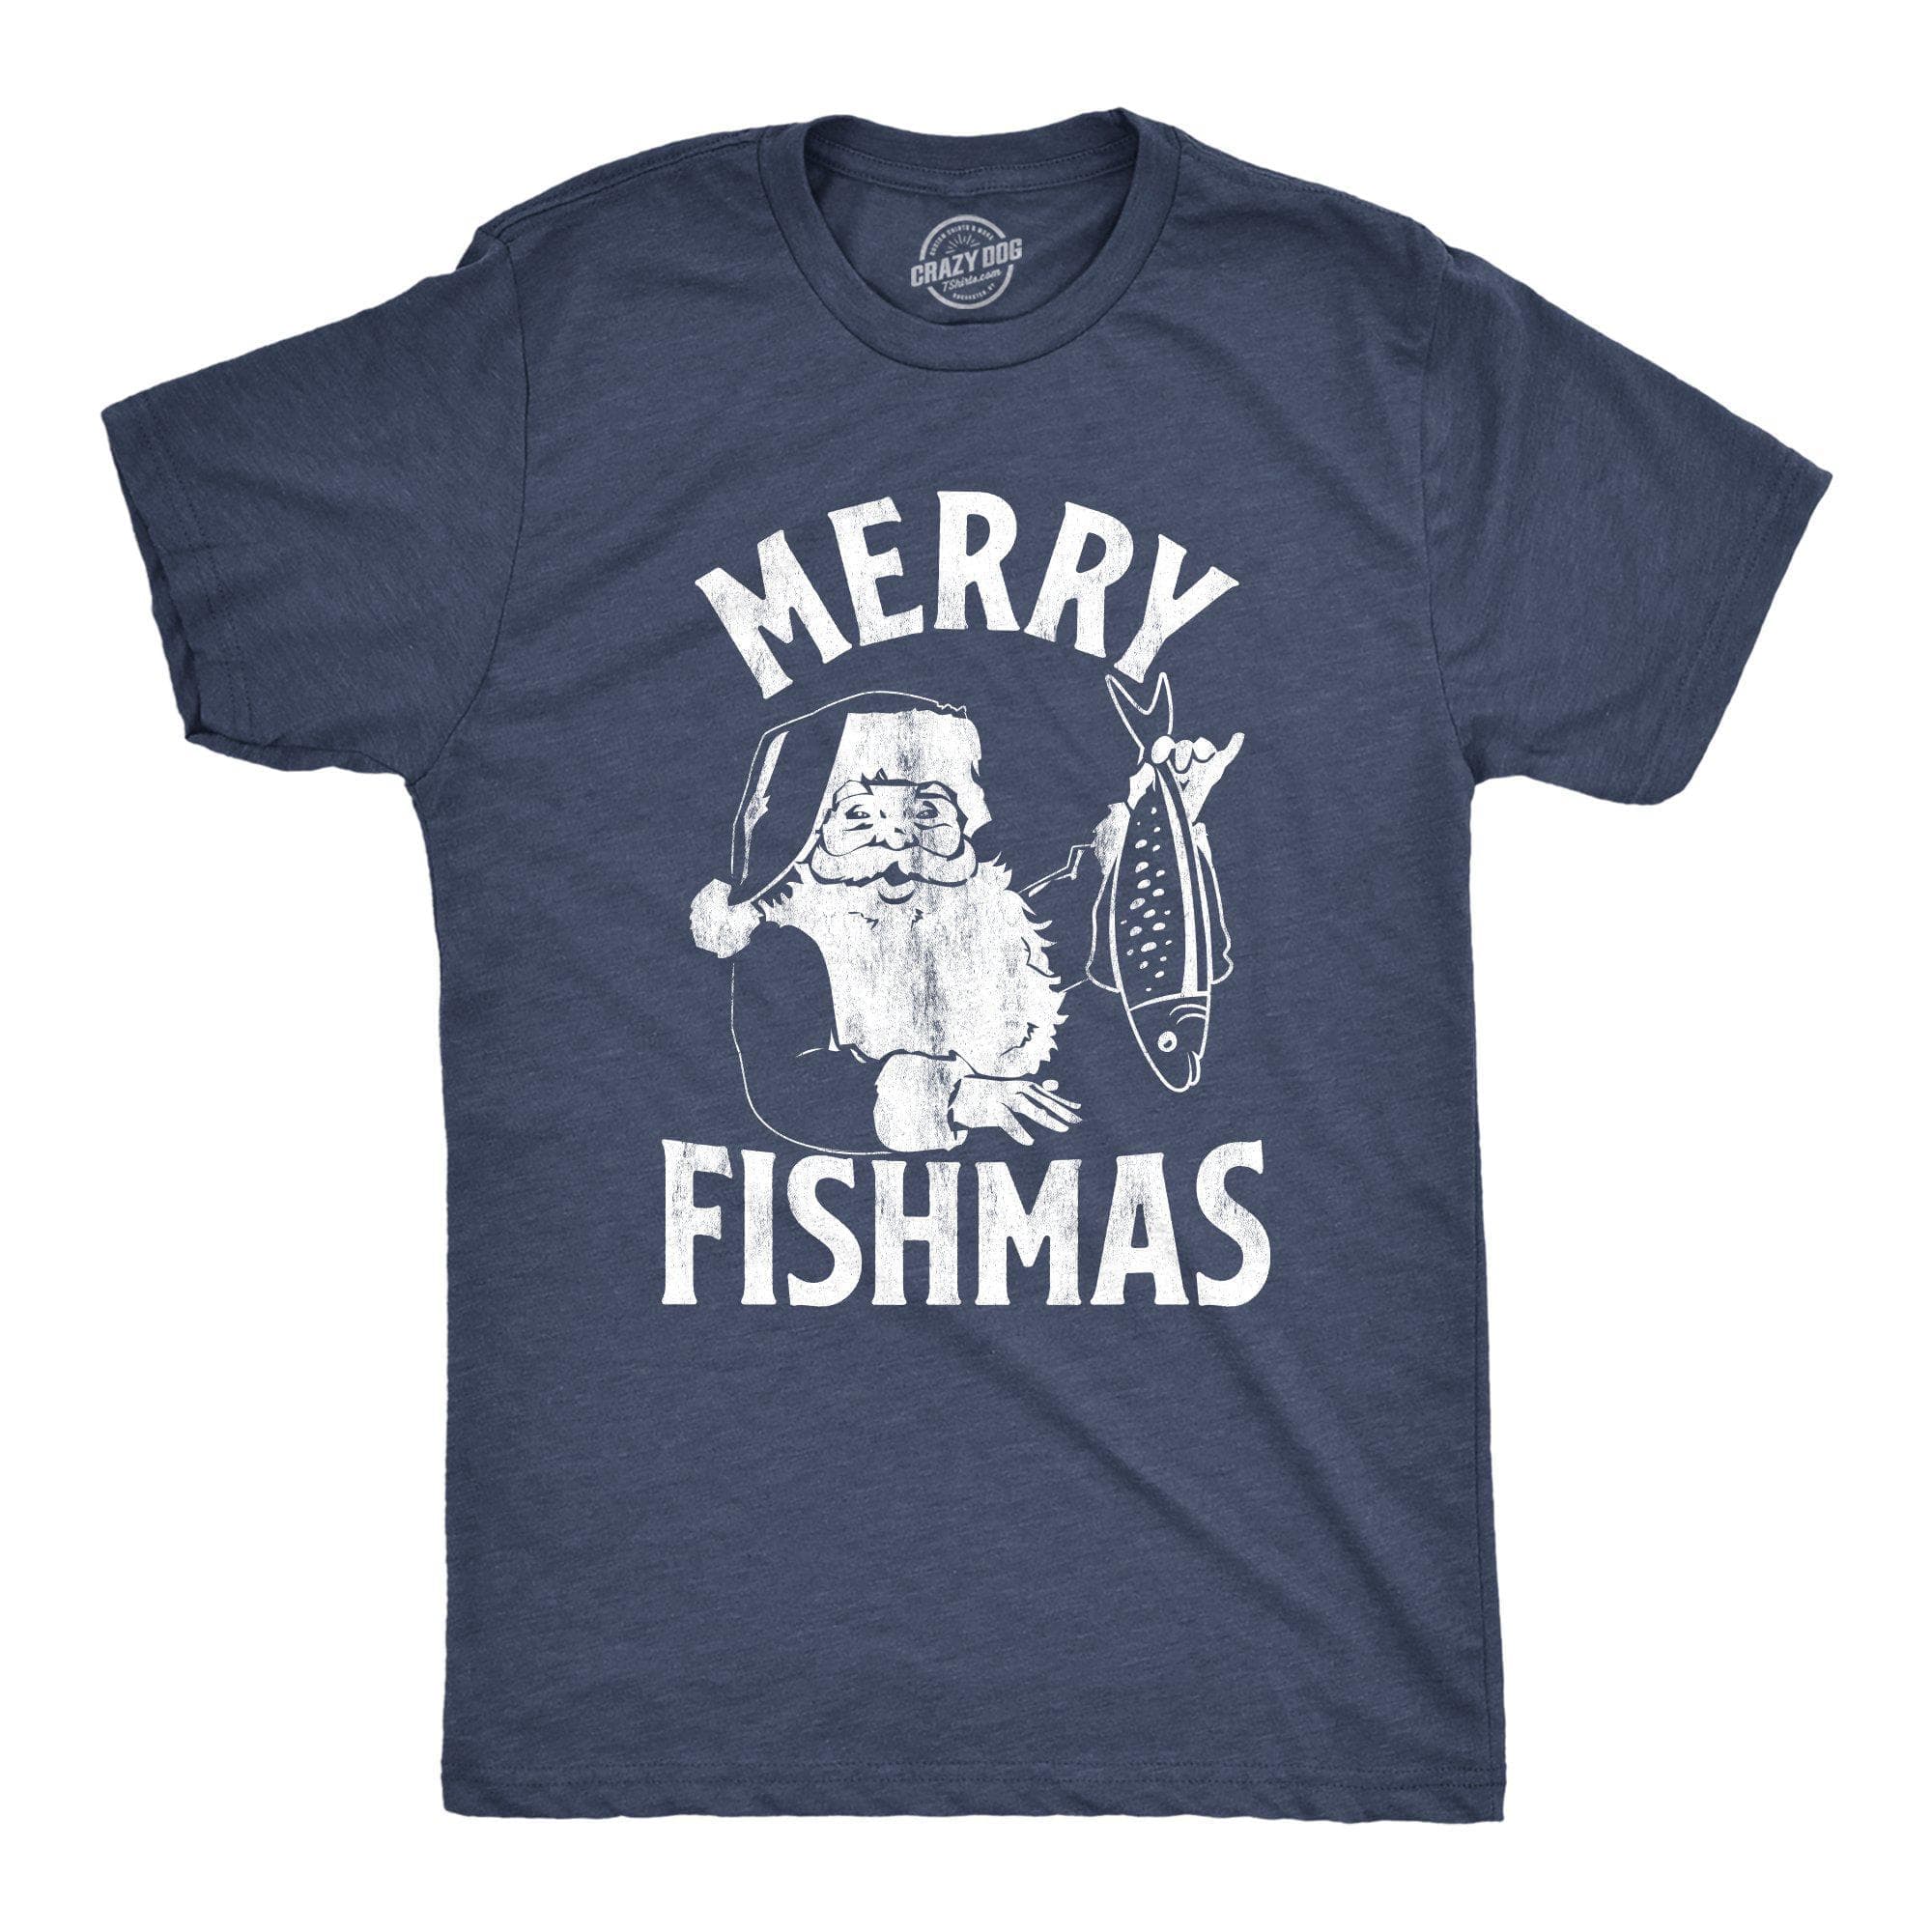 Creeps and Idiots Fishing T-Shirt, Funny shirt, fishing shirt, gift